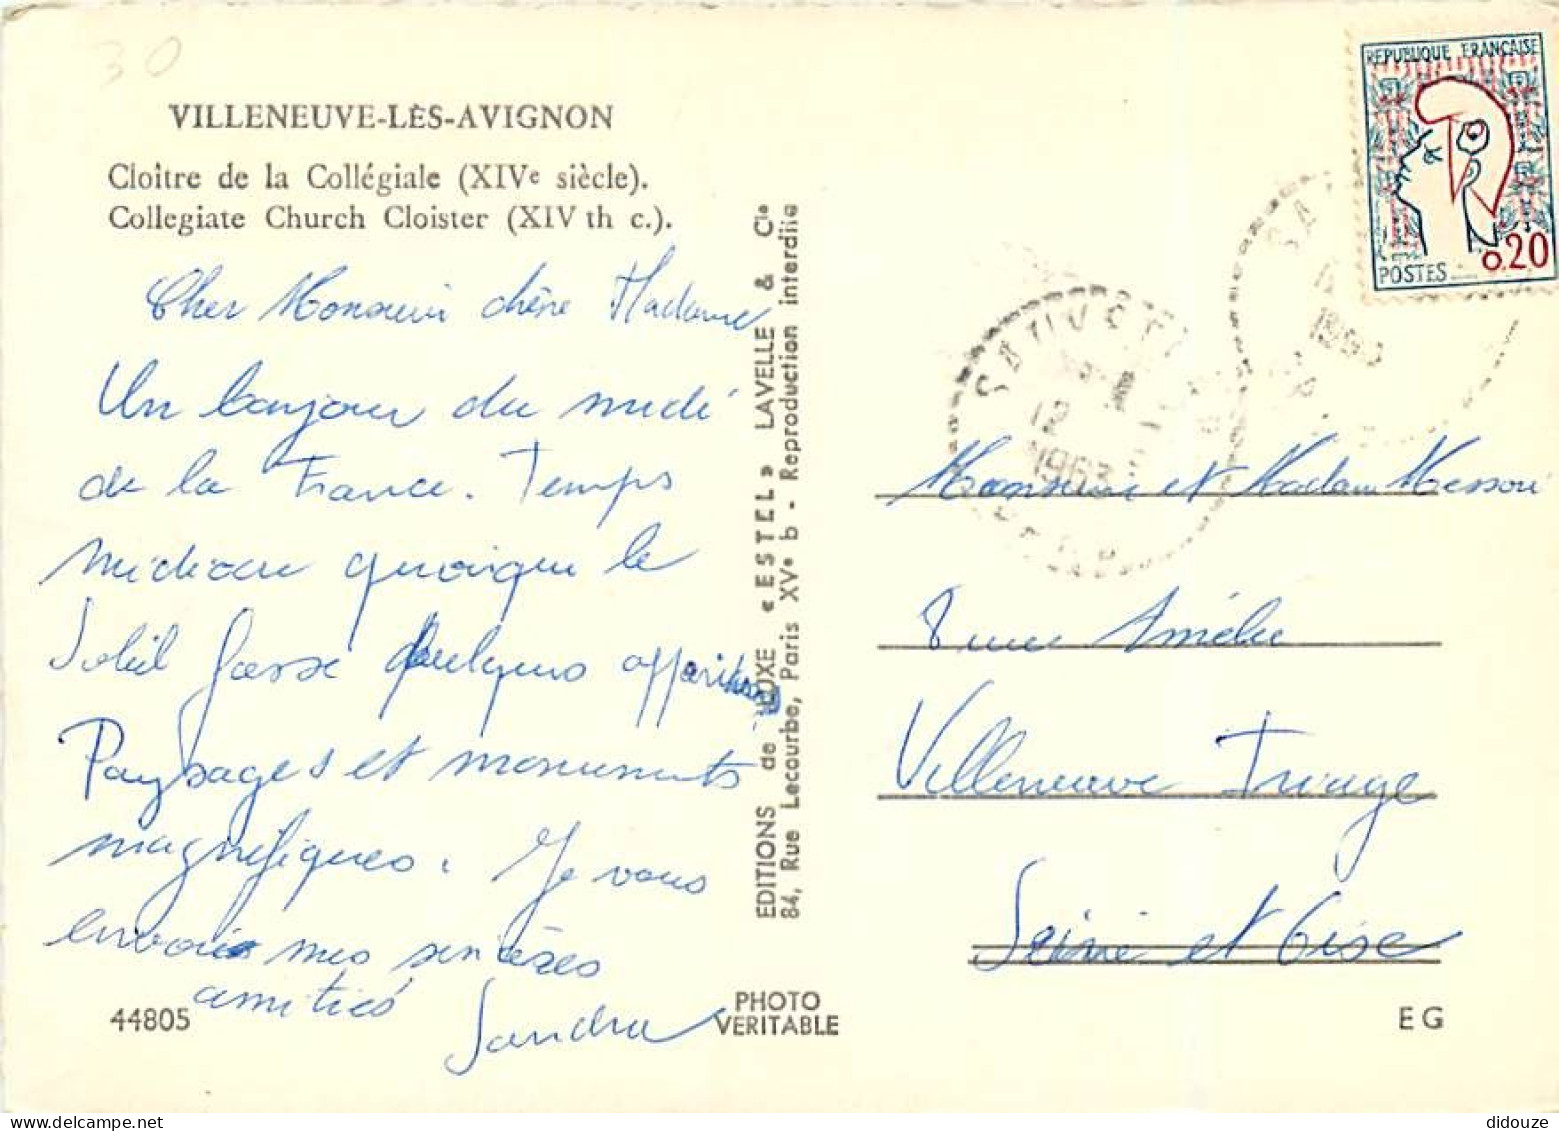 30 - Villeneuve Les Avignon - Cloître De La Collégiale - Mention Photographie Véritable - Carte Dentelée - CPSM Grand Fo - Villeneuve-lès-Avignon